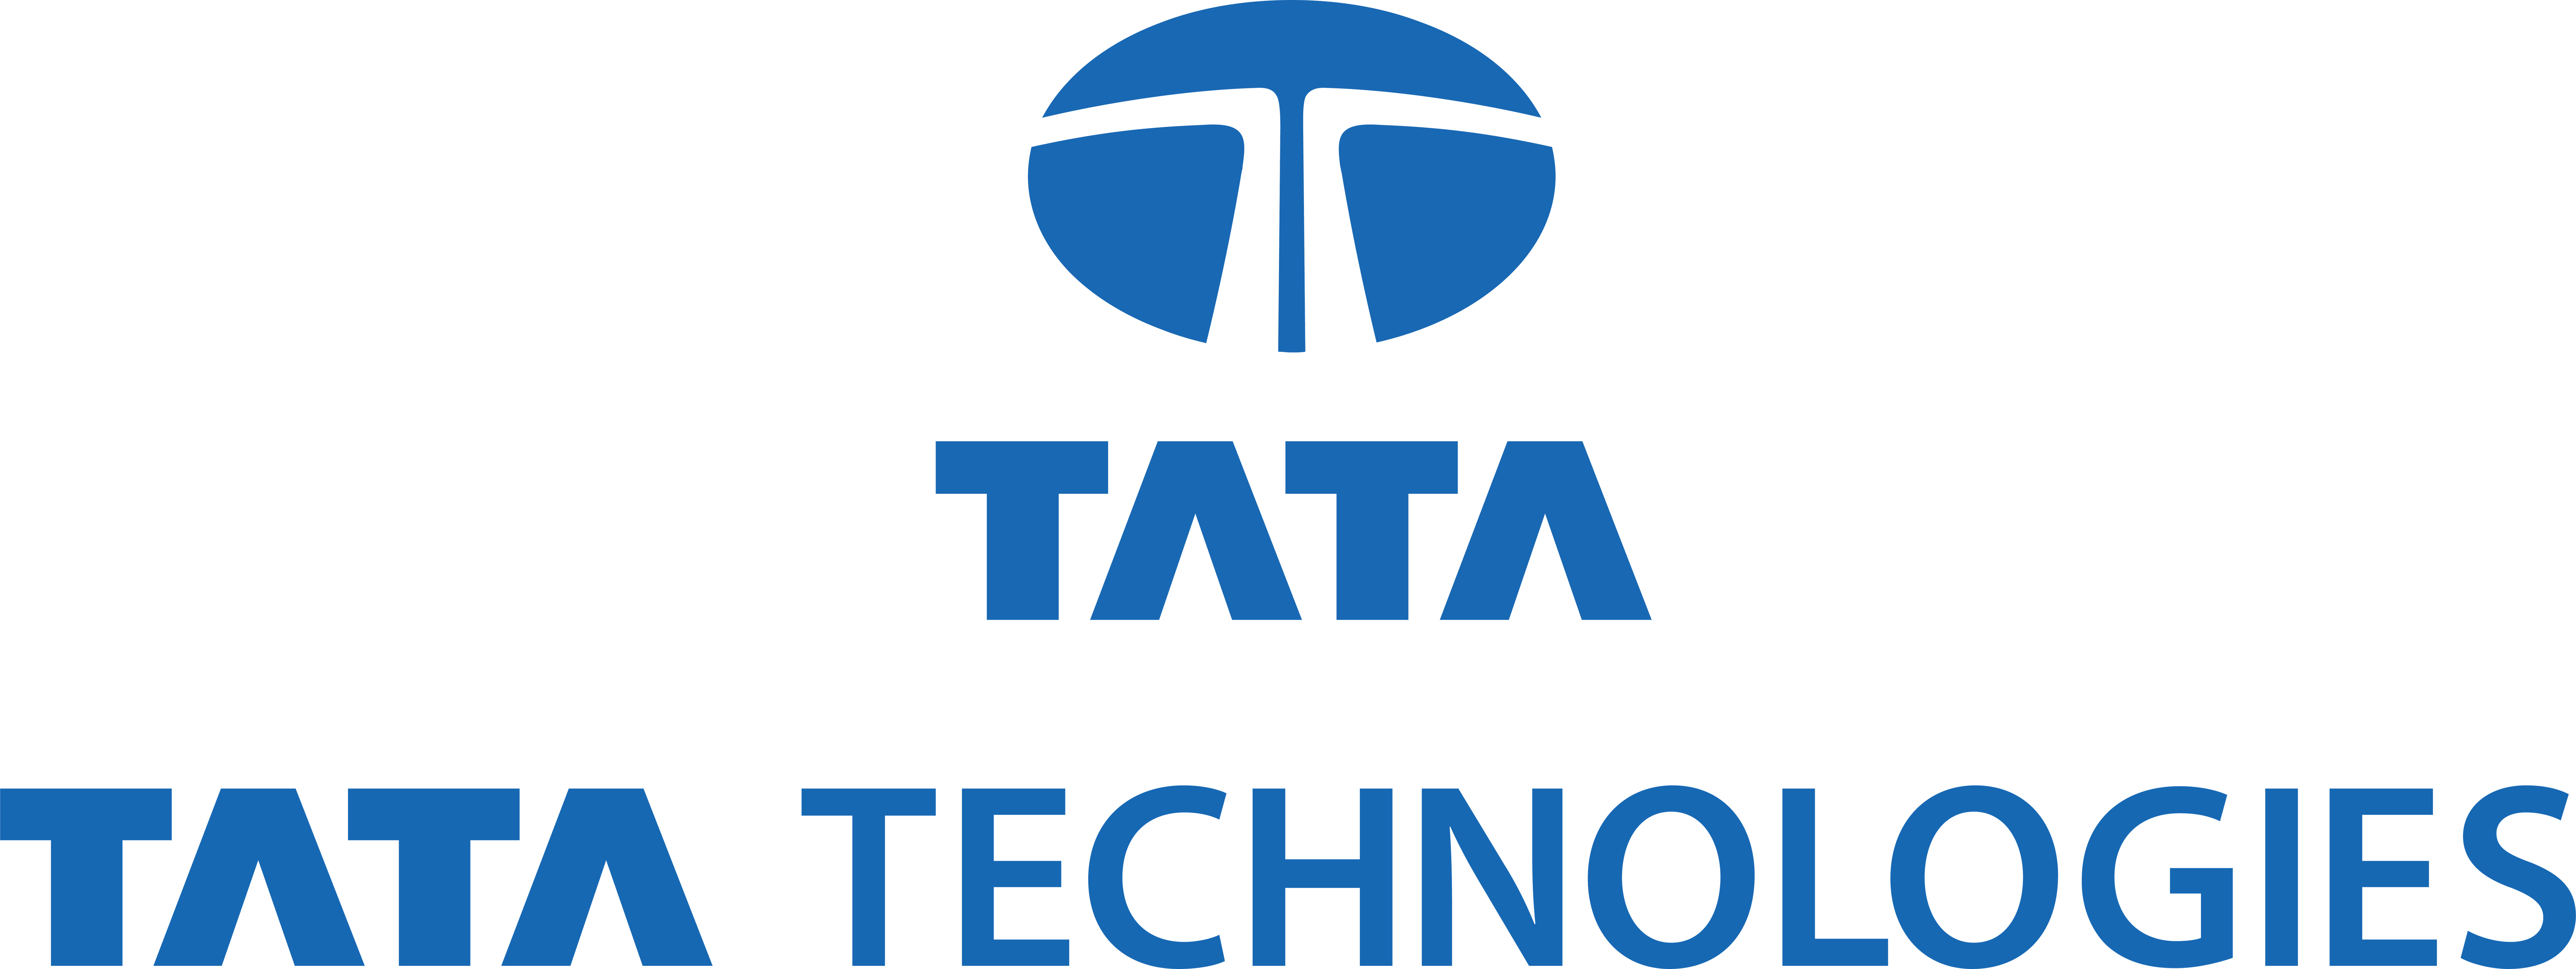 Tata Technologies Pte Ltd.